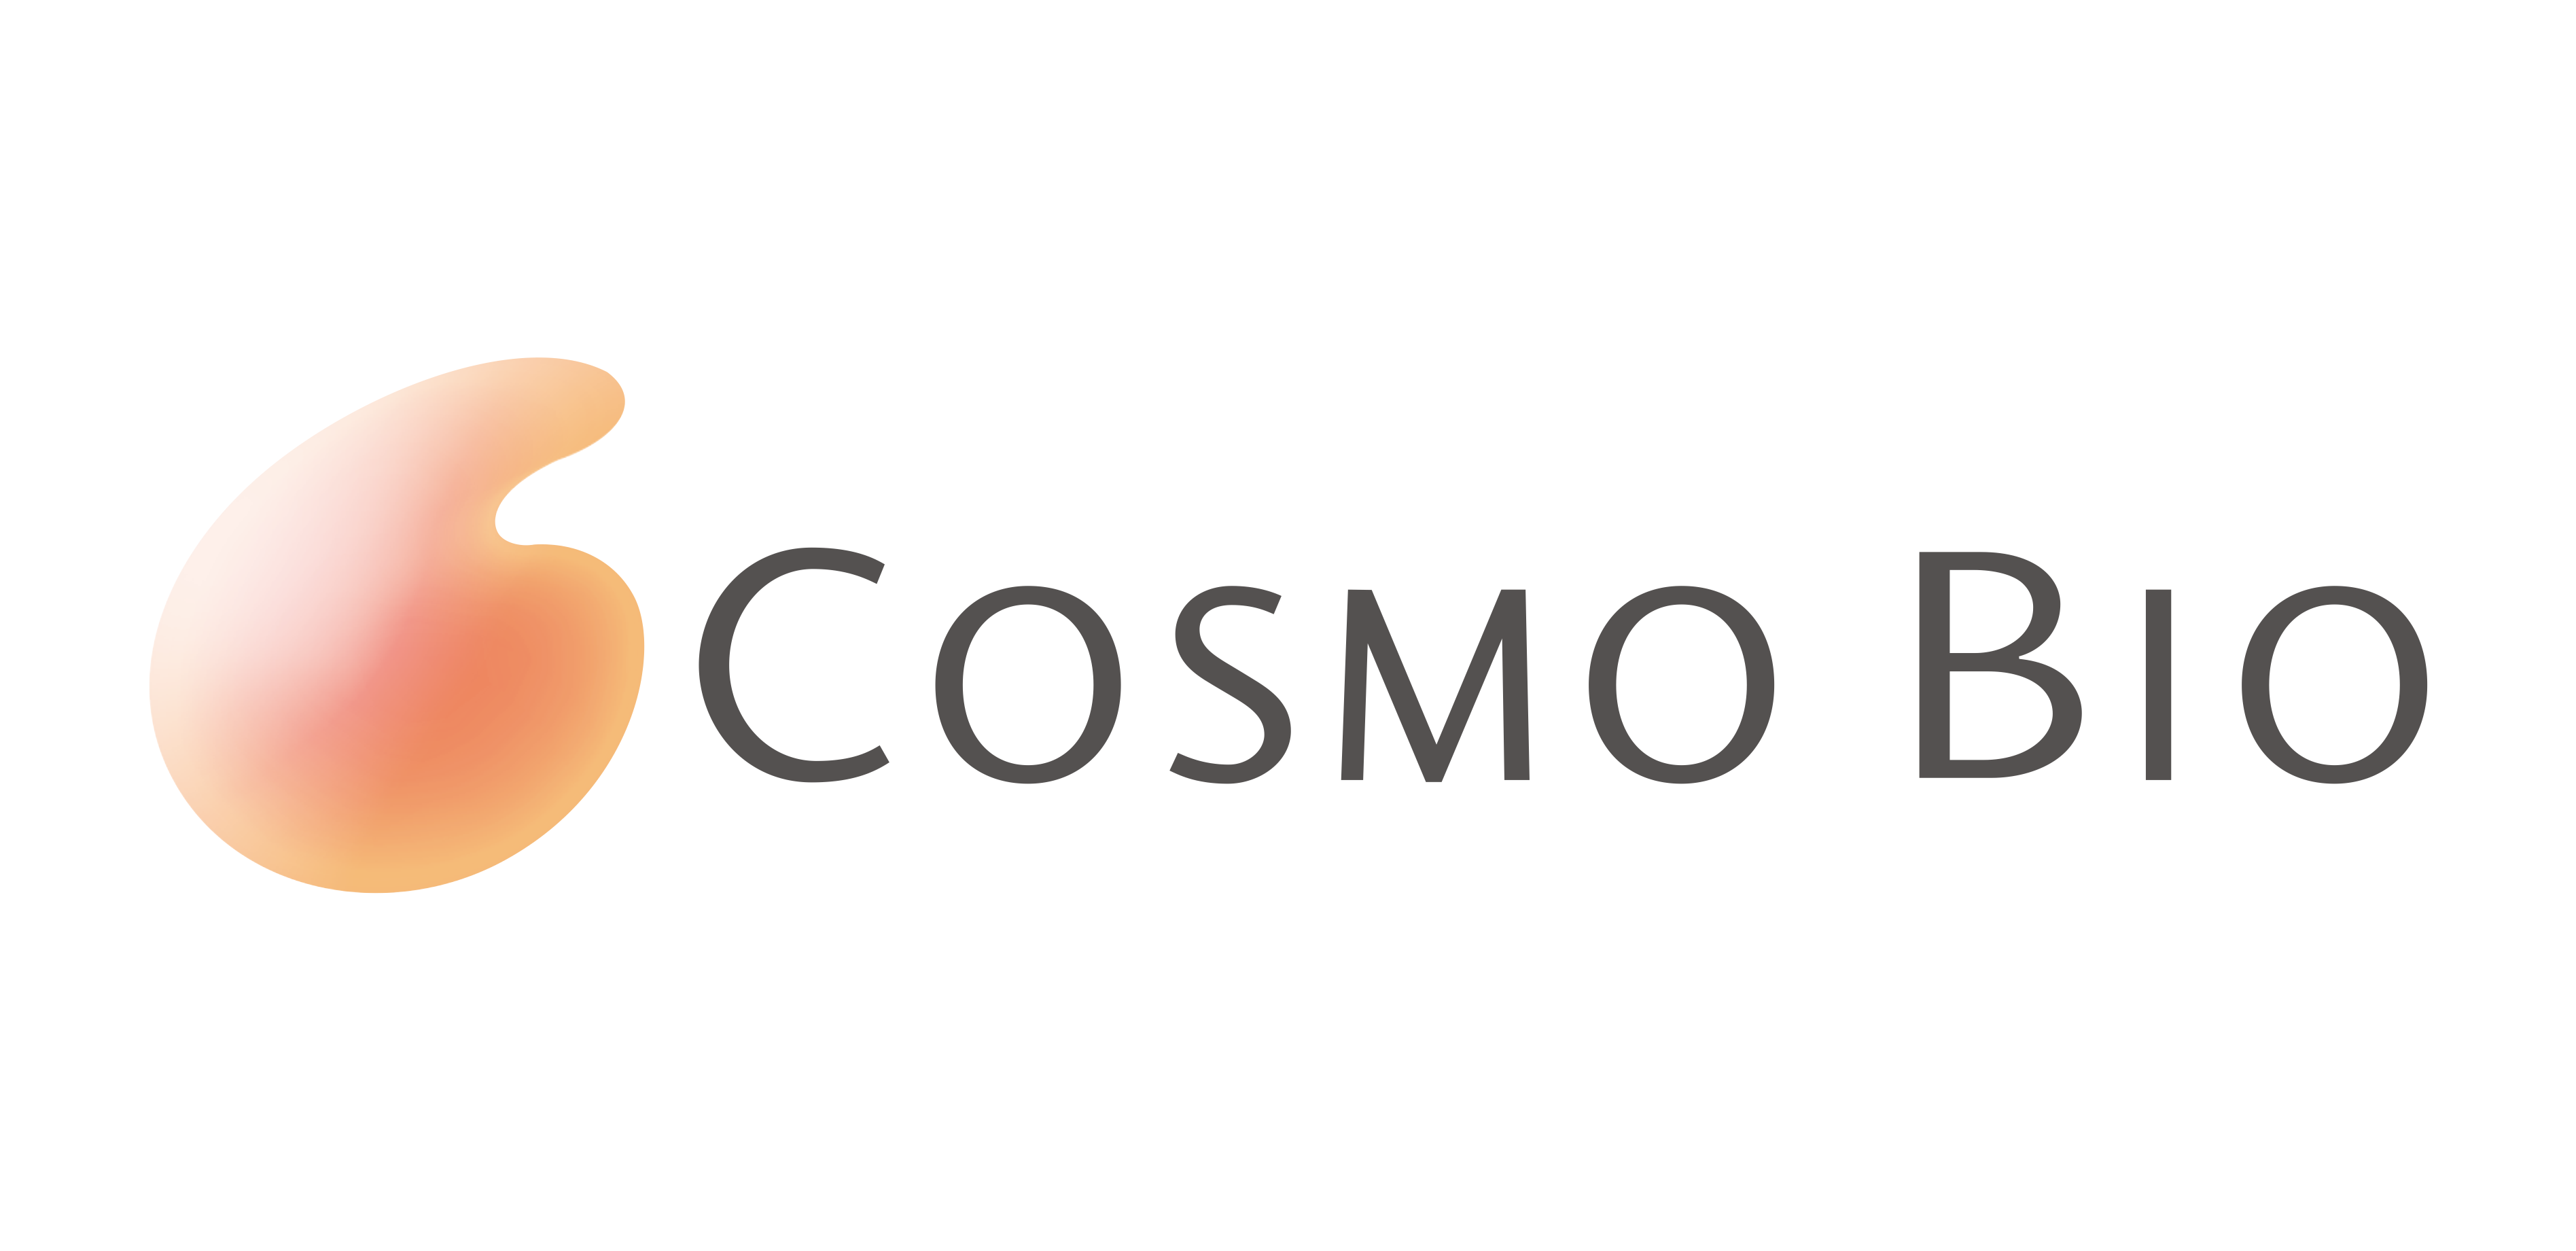 Cosmo Bio